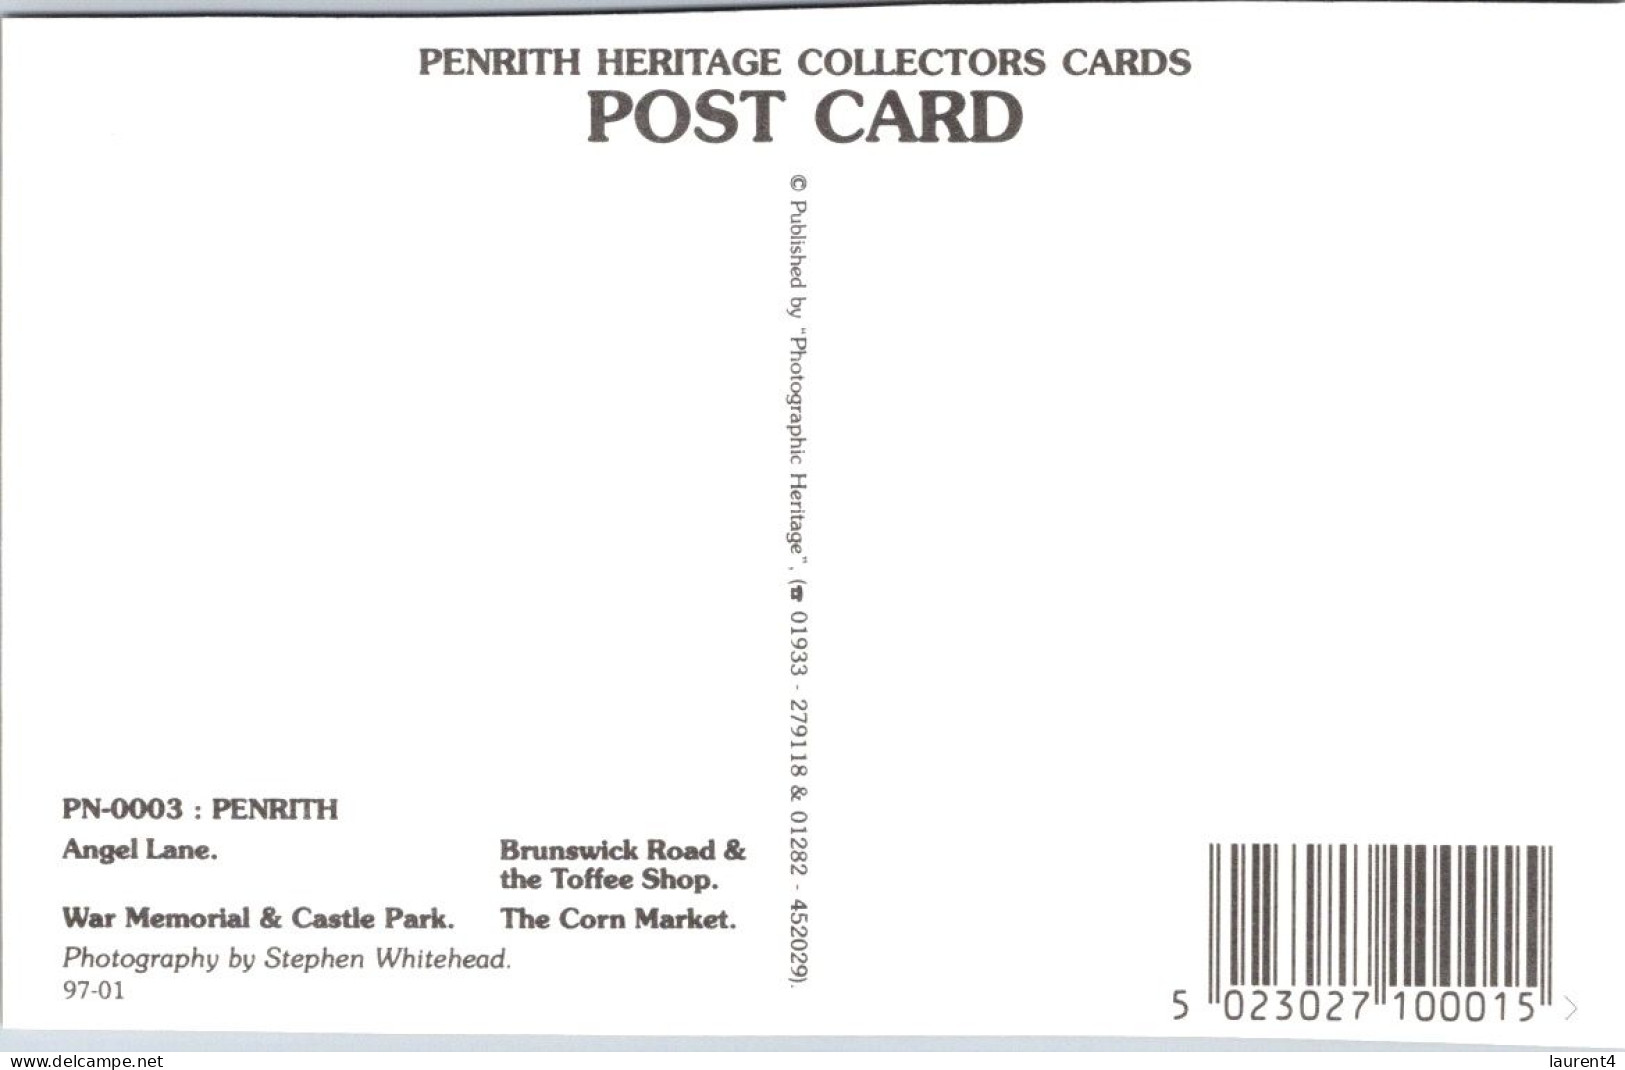 (1 S 8) UK - (Cumbria) Penrith (3 Postcards) - Penrith